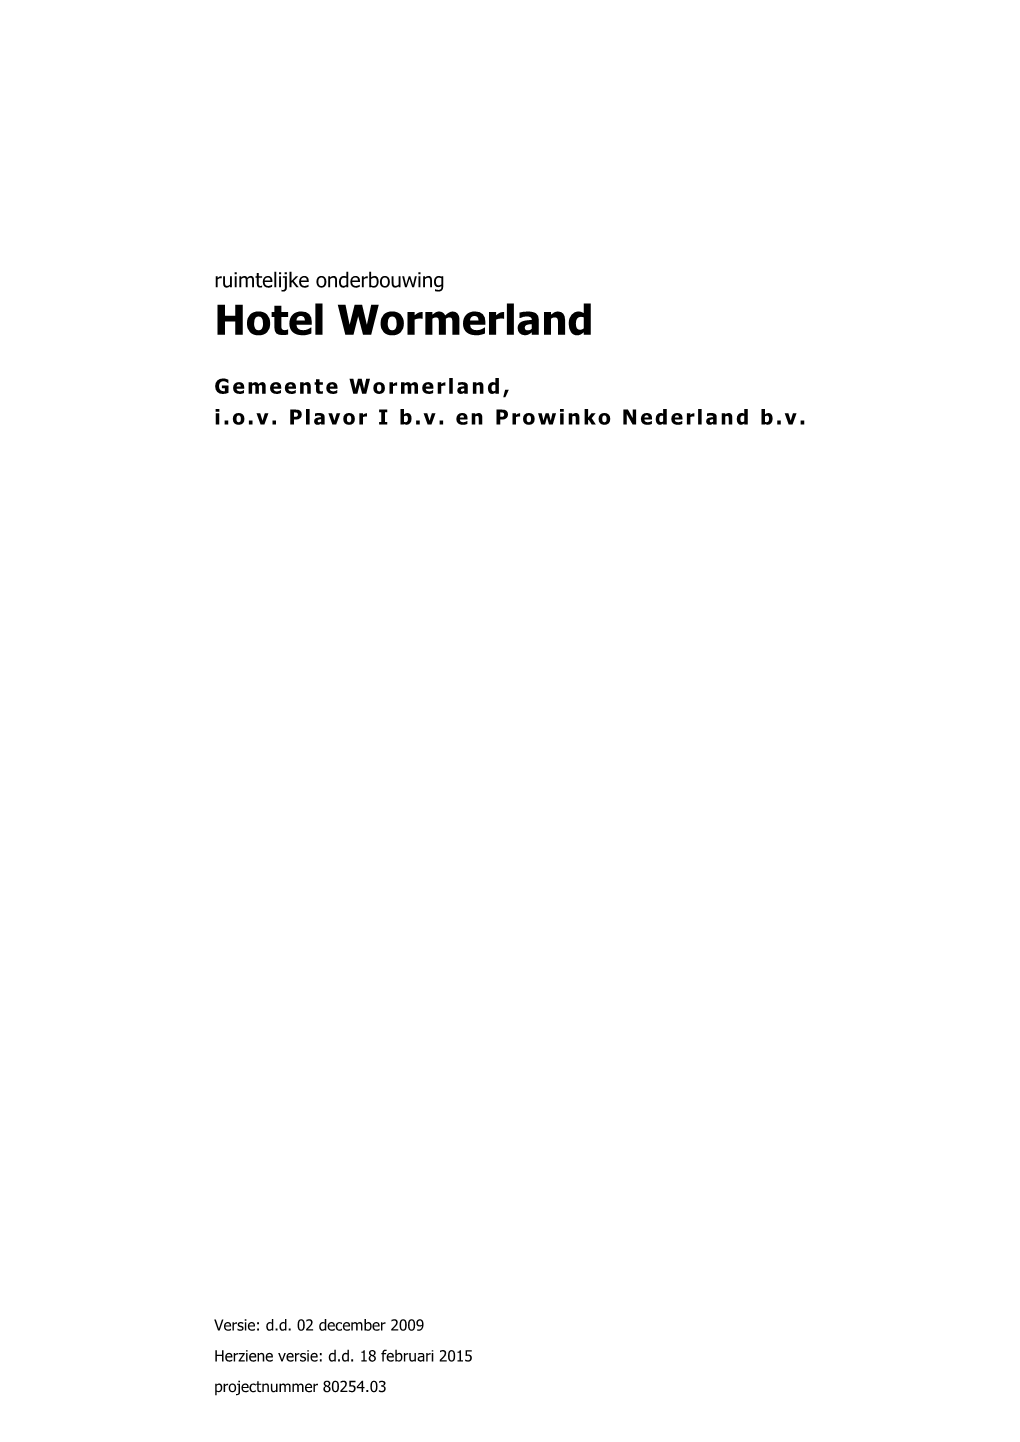 Hotel Wormerland